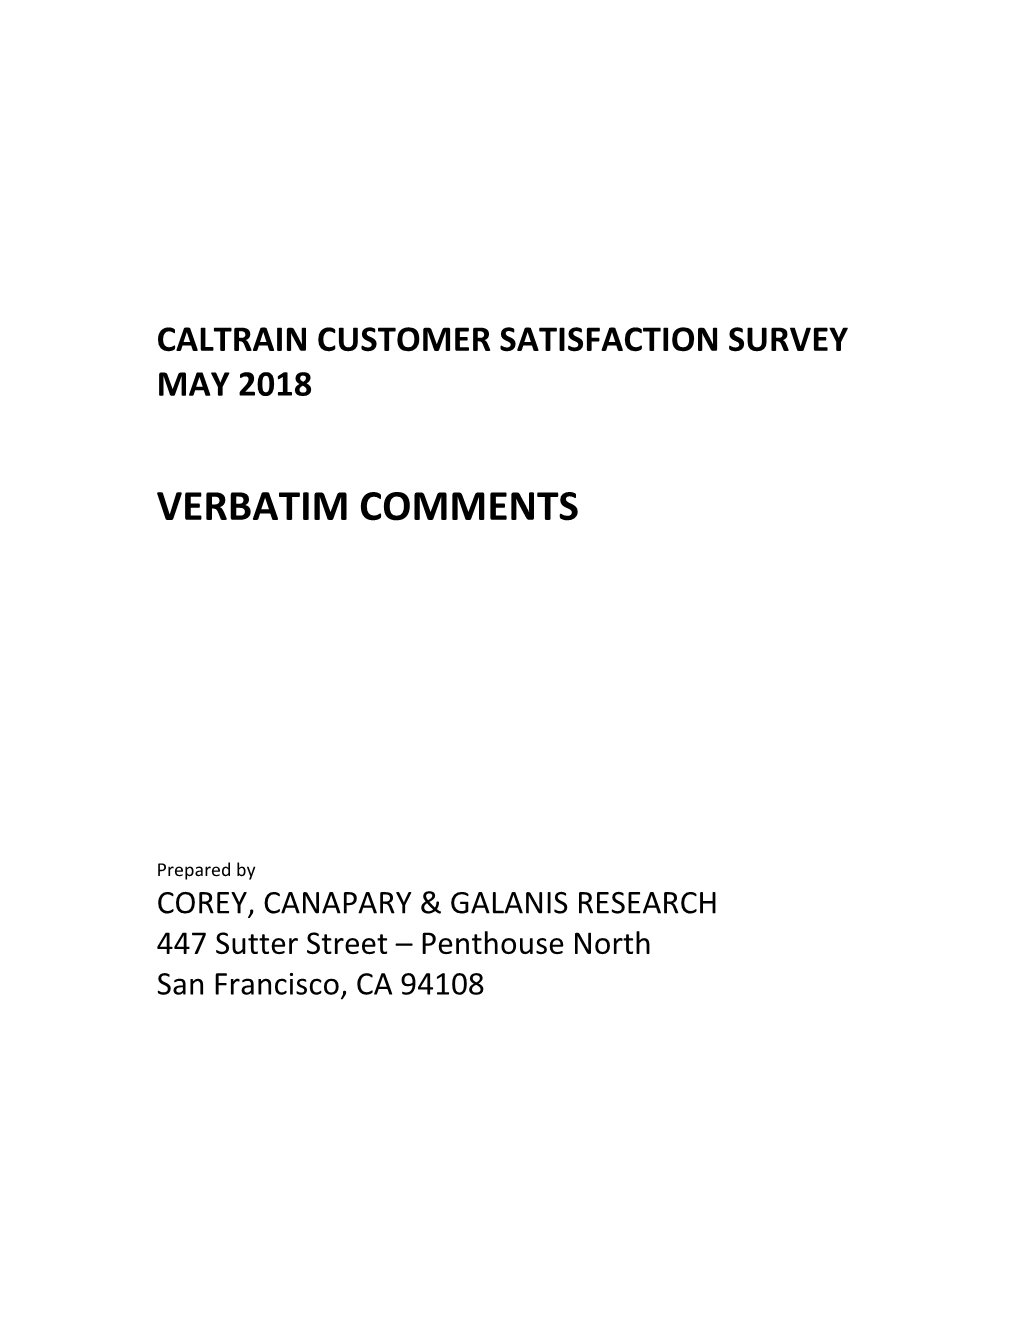 2006 Samtrans Rider Survey